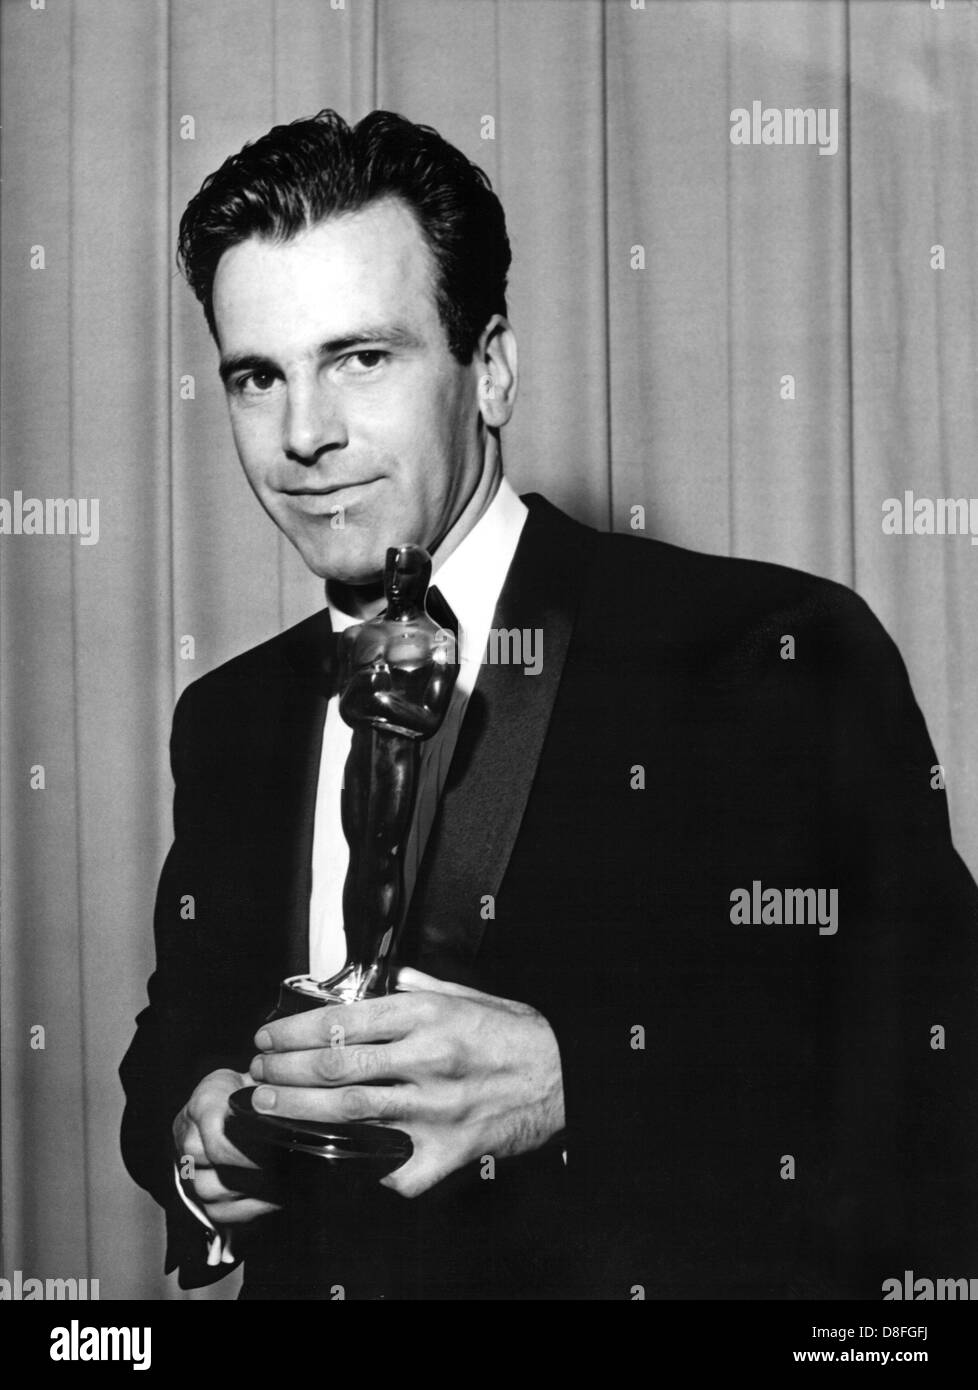 Maximilian Schell, Schauspieler, Regisseur, Produzent und Schriftsteller aus der Schweiz, wird 70 am 8. Dezember 2000. Er erhielt den Academy Award (Oscar) als bester Schauspieler in einer Hauptrolle in "Urteil von Nürnberg". Bild von 1961. Stockfoto